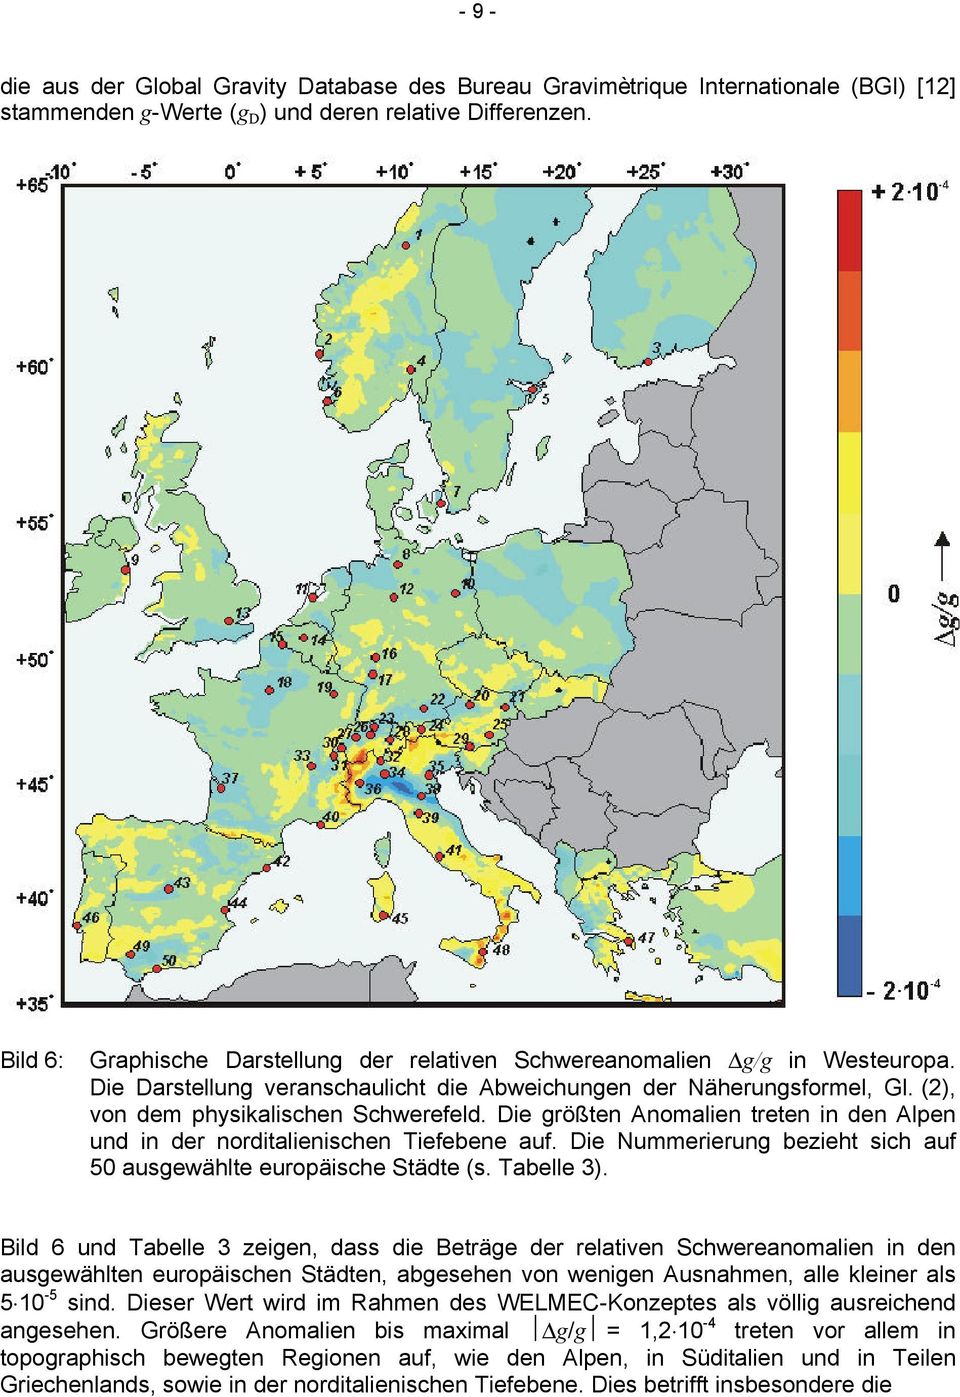 Die größten Anomalien treten in den Alpen und in der norditalienischen Tiefebene auf. Die Nummerierung bezieht sich auf 50 ausgewählte europäische Städte (s. Tabelle 3).